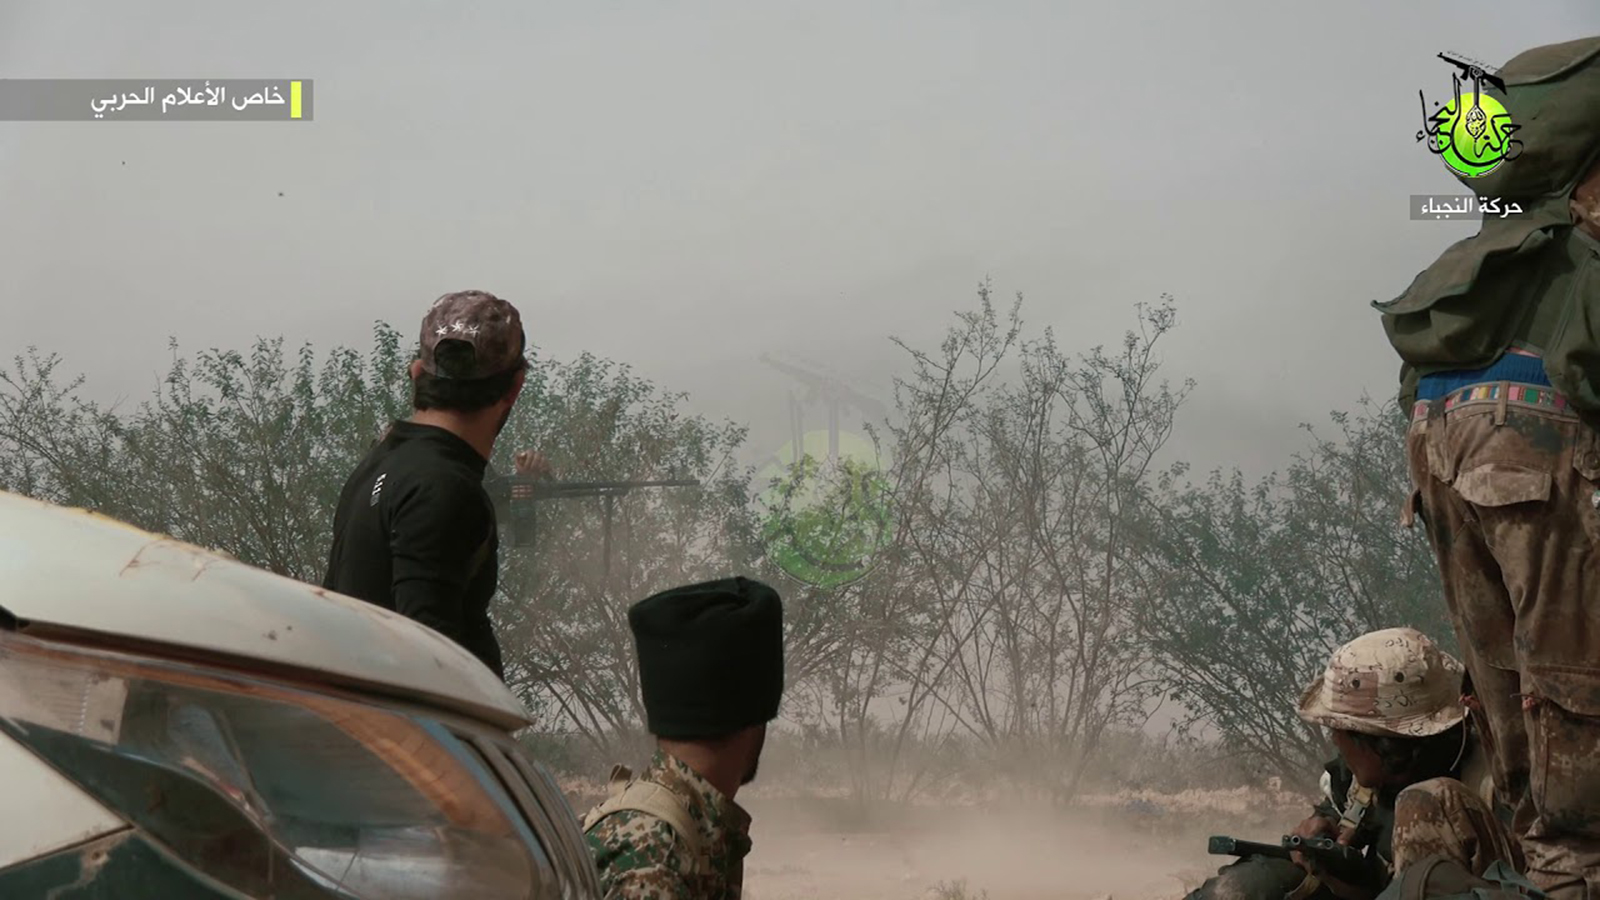 النظام يتقدم جنوبي حلب..و"تحرير الشام" لا تقاتل